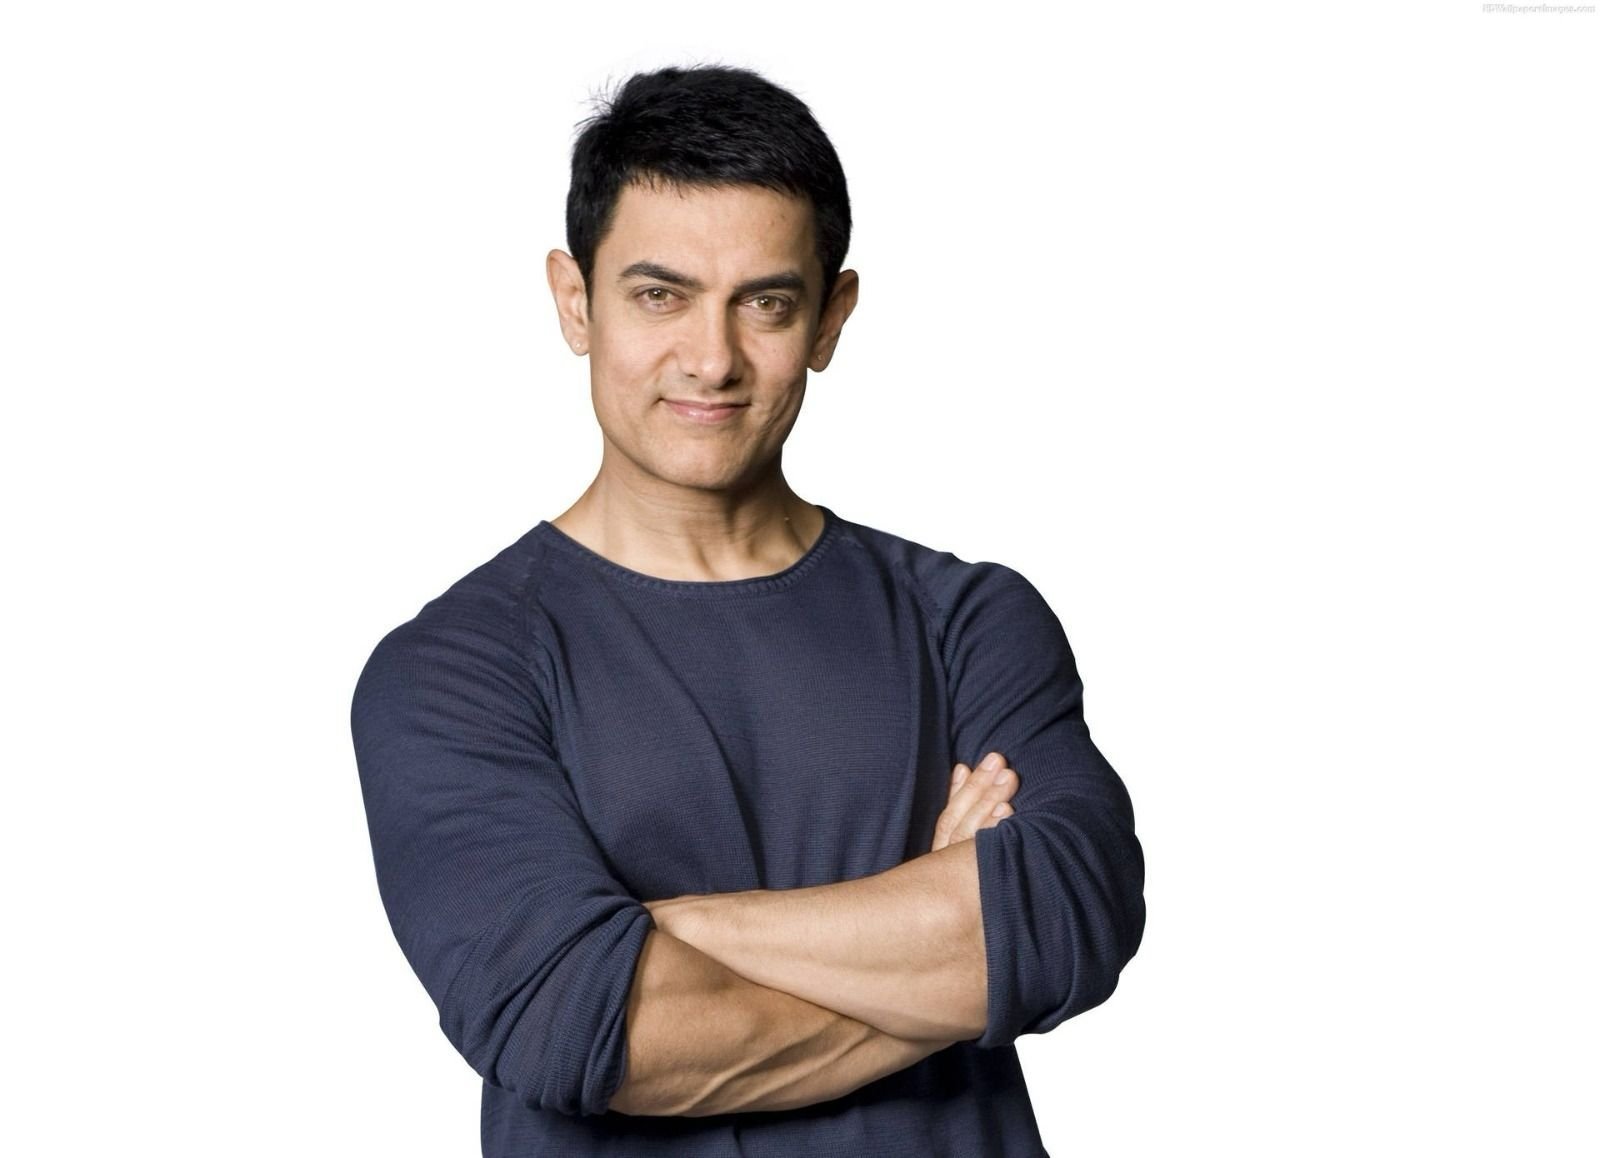 सुपरस्टार आमिर खान अपनी आने वाली फिल्म पर बोलें, 'तारे ज़मीन पर ने आपको रुलाया है, सितारे ज़मीन पर...'